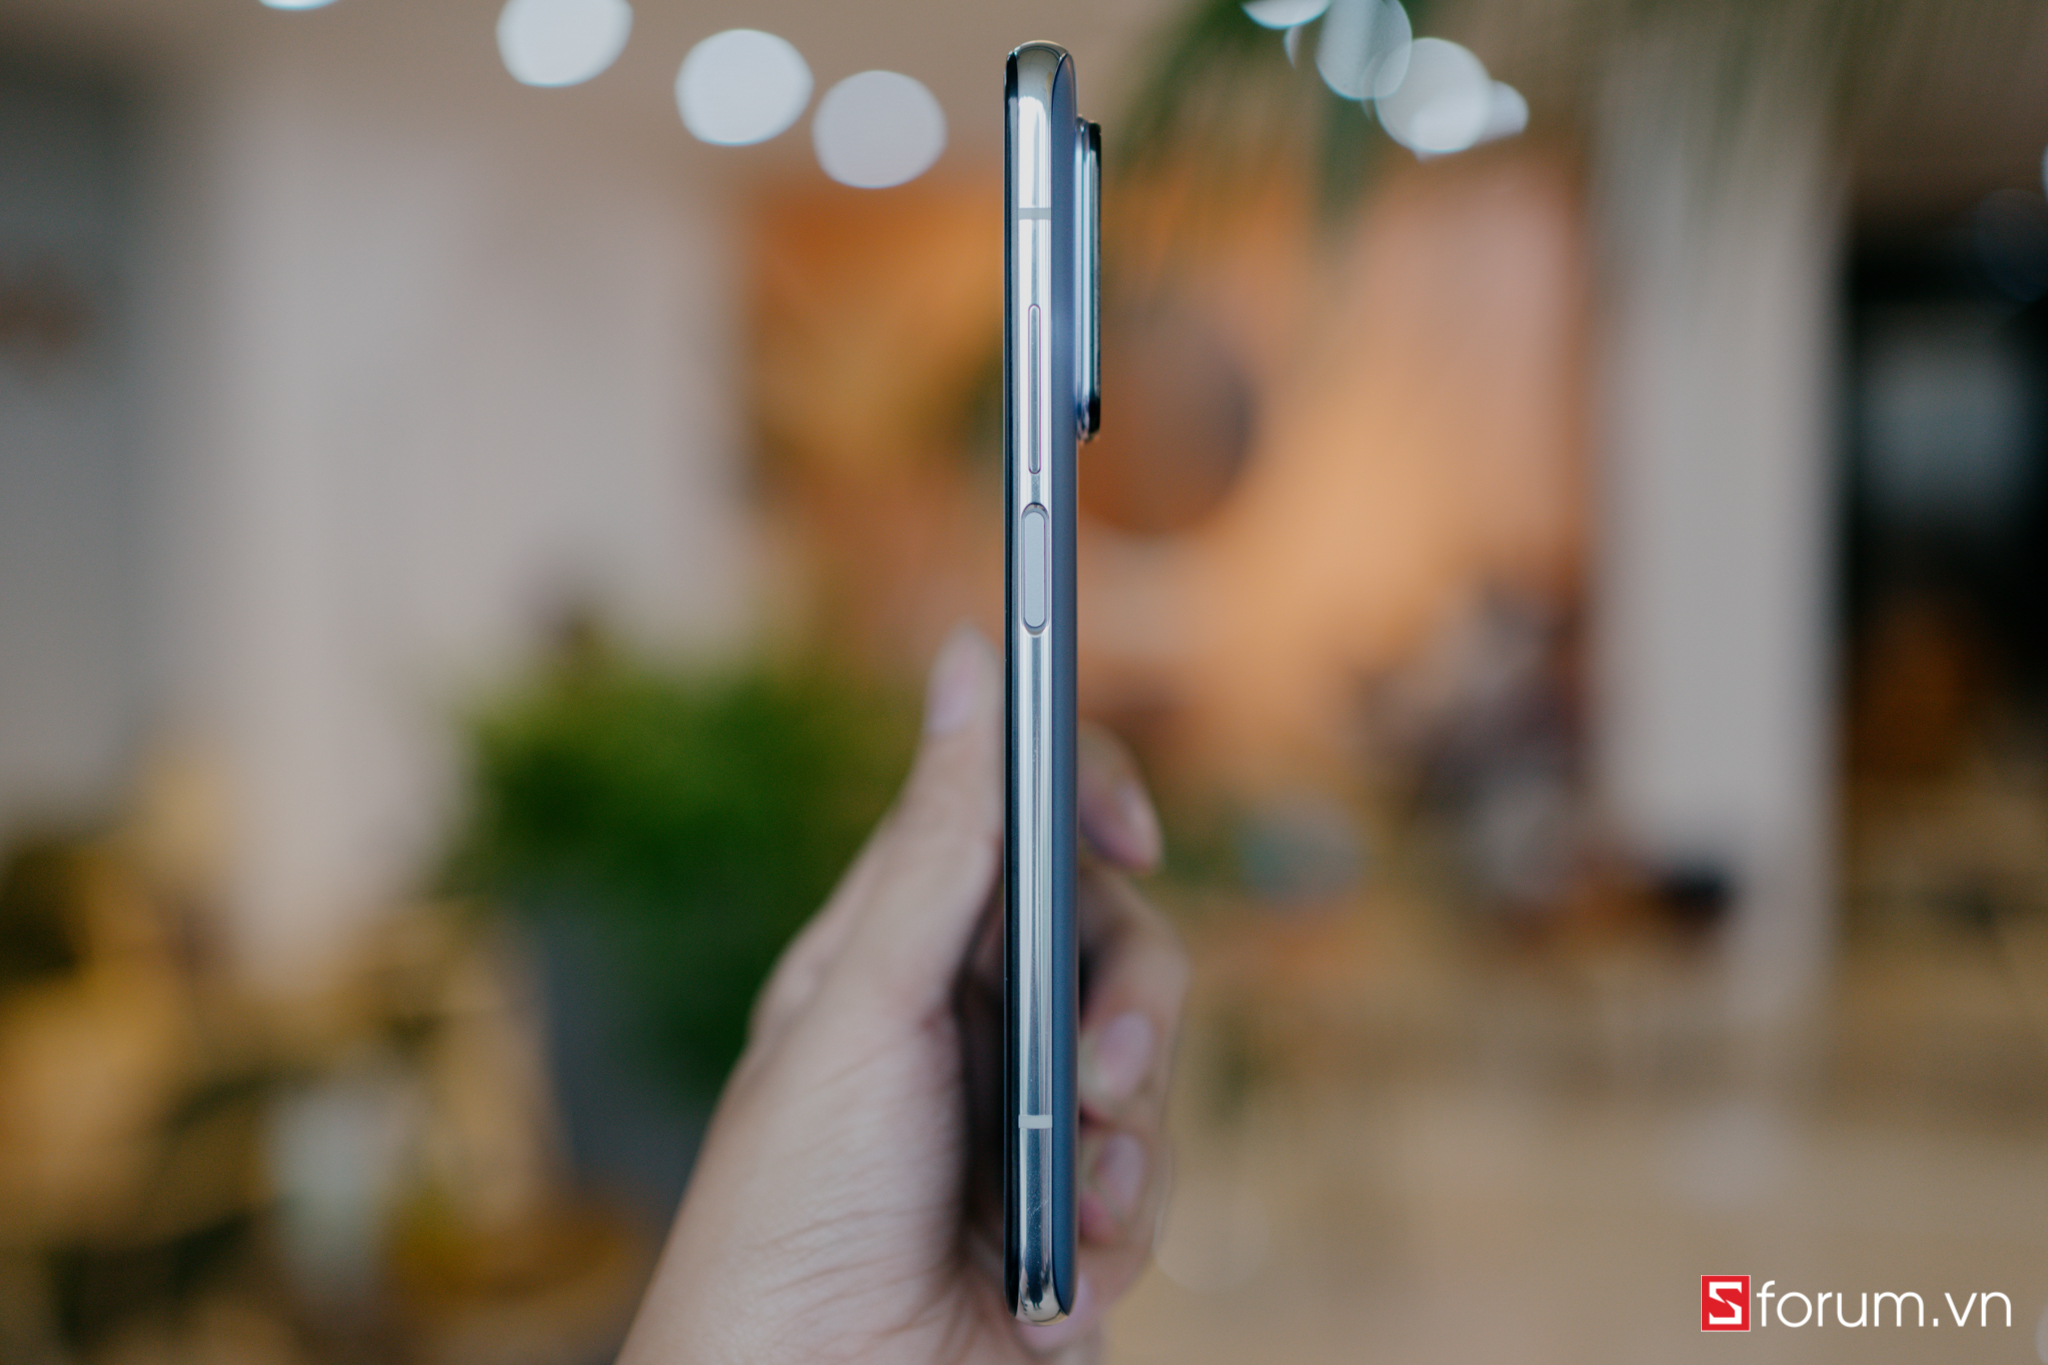 Sforum - Trang thông tin công nghệ mới nhất DSC03527 Trên tay Xiaomi Mi 10T Pro: Smartphone hot nhất phân khúc cận cao cấp! 